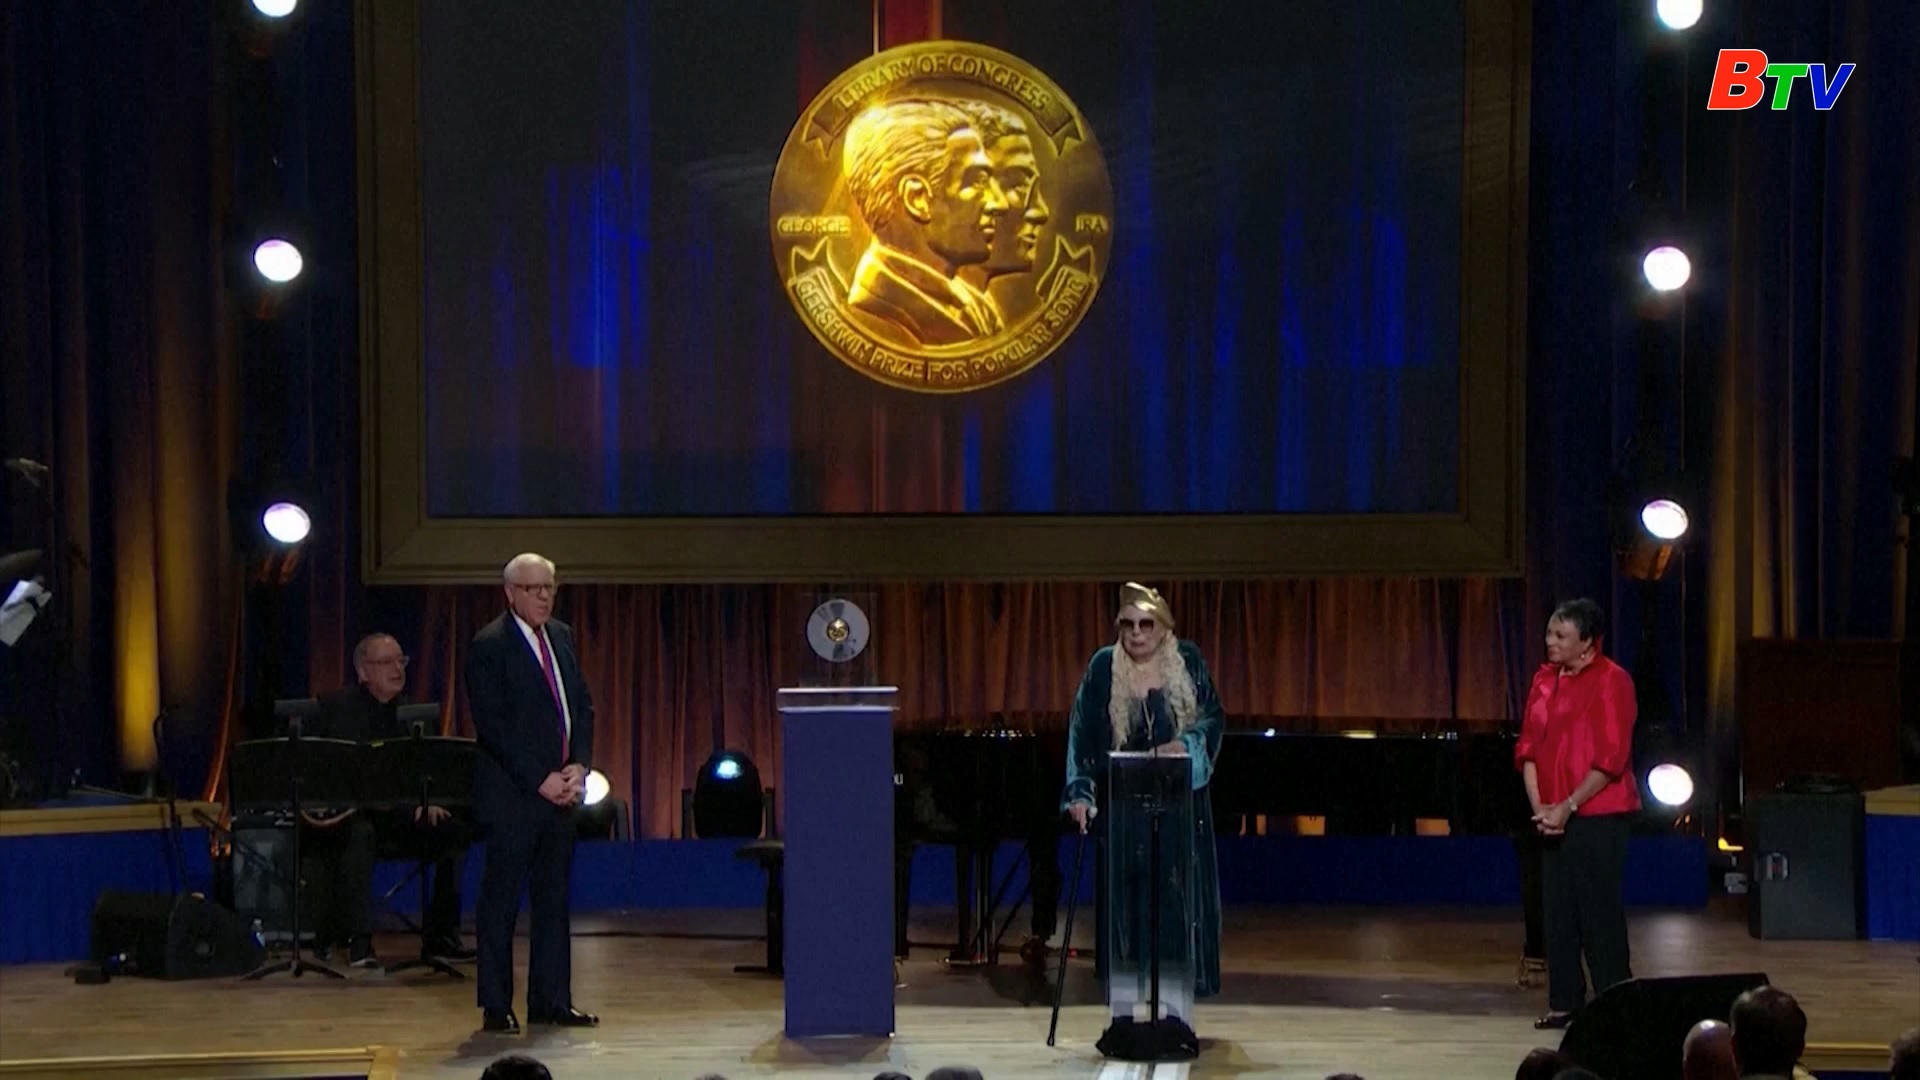 Ca sĩ Joni Mitchell được vinh danh giải thưởng Gershwin